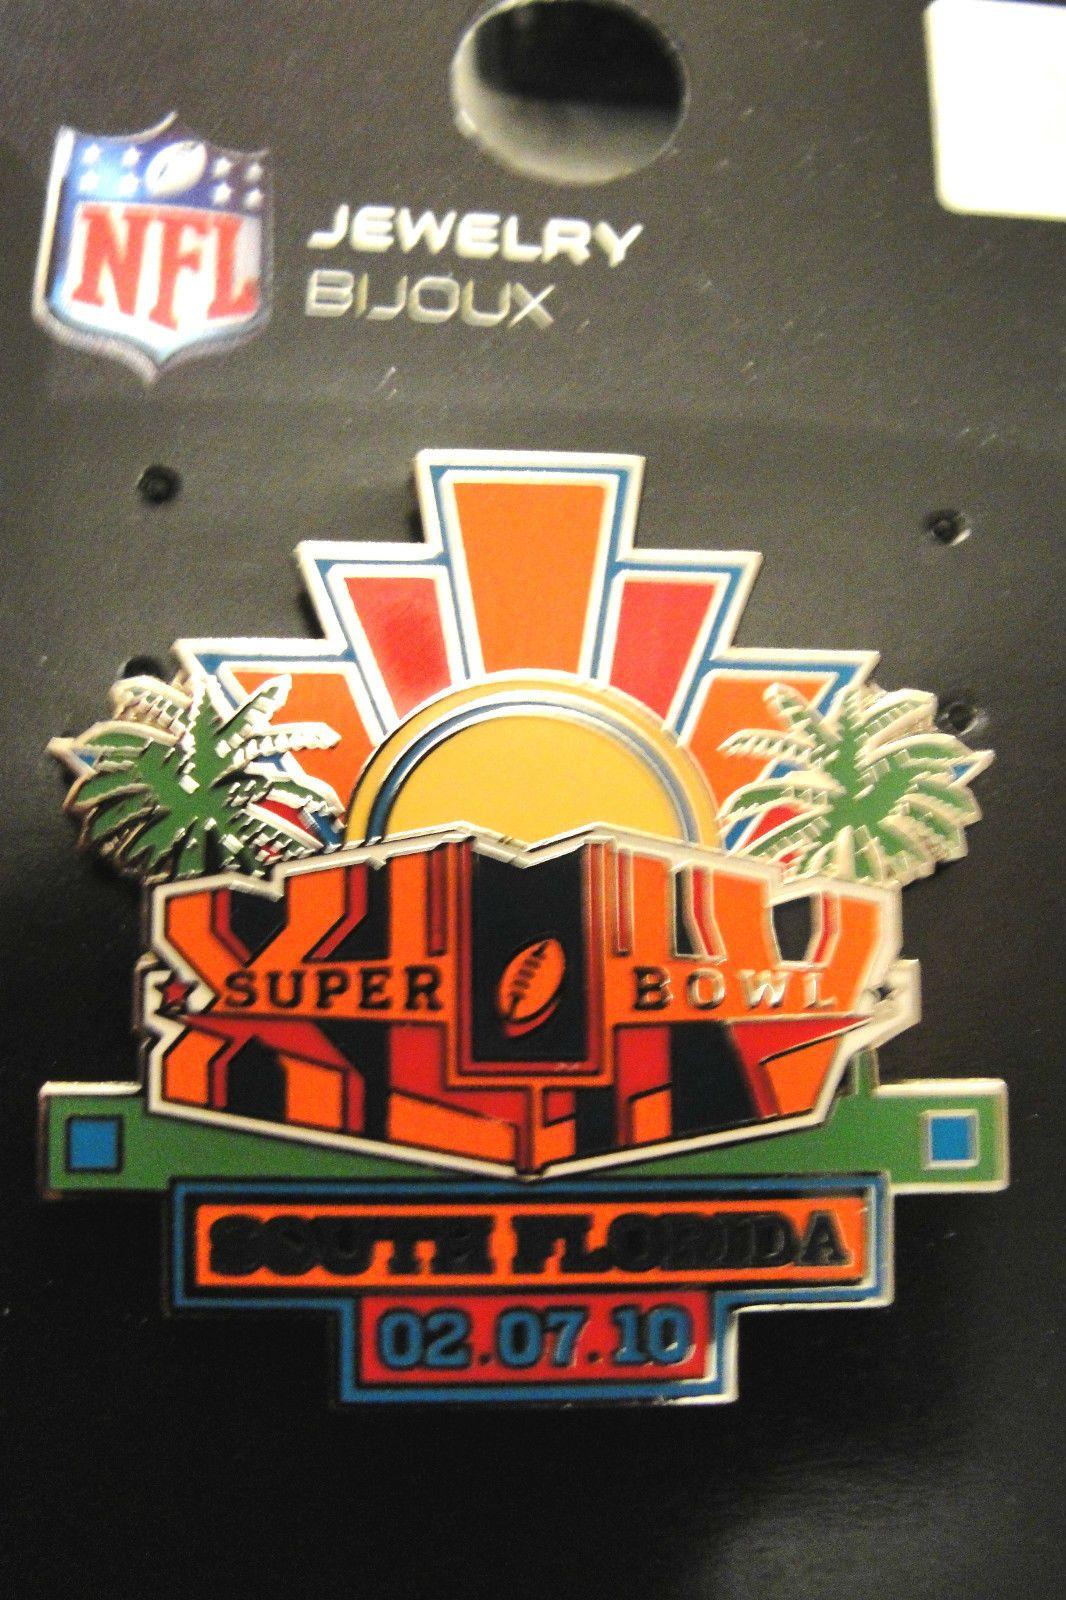 XLIV Logo - Super Bowl 44 XLIV Collectibles